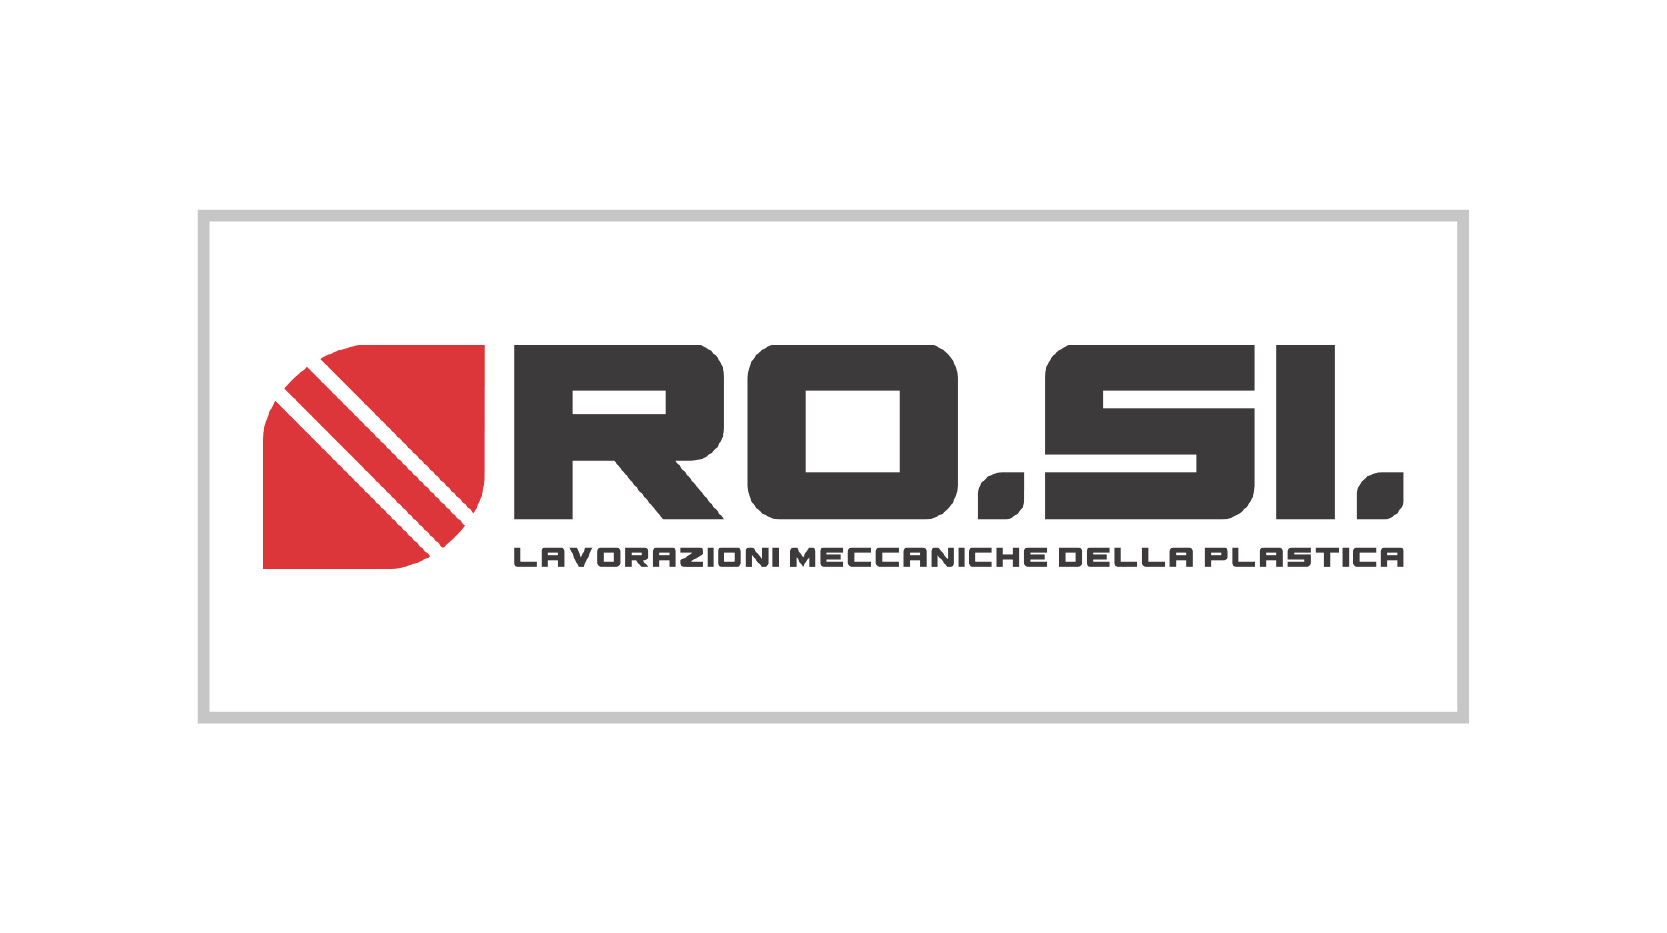 ROSI-logo